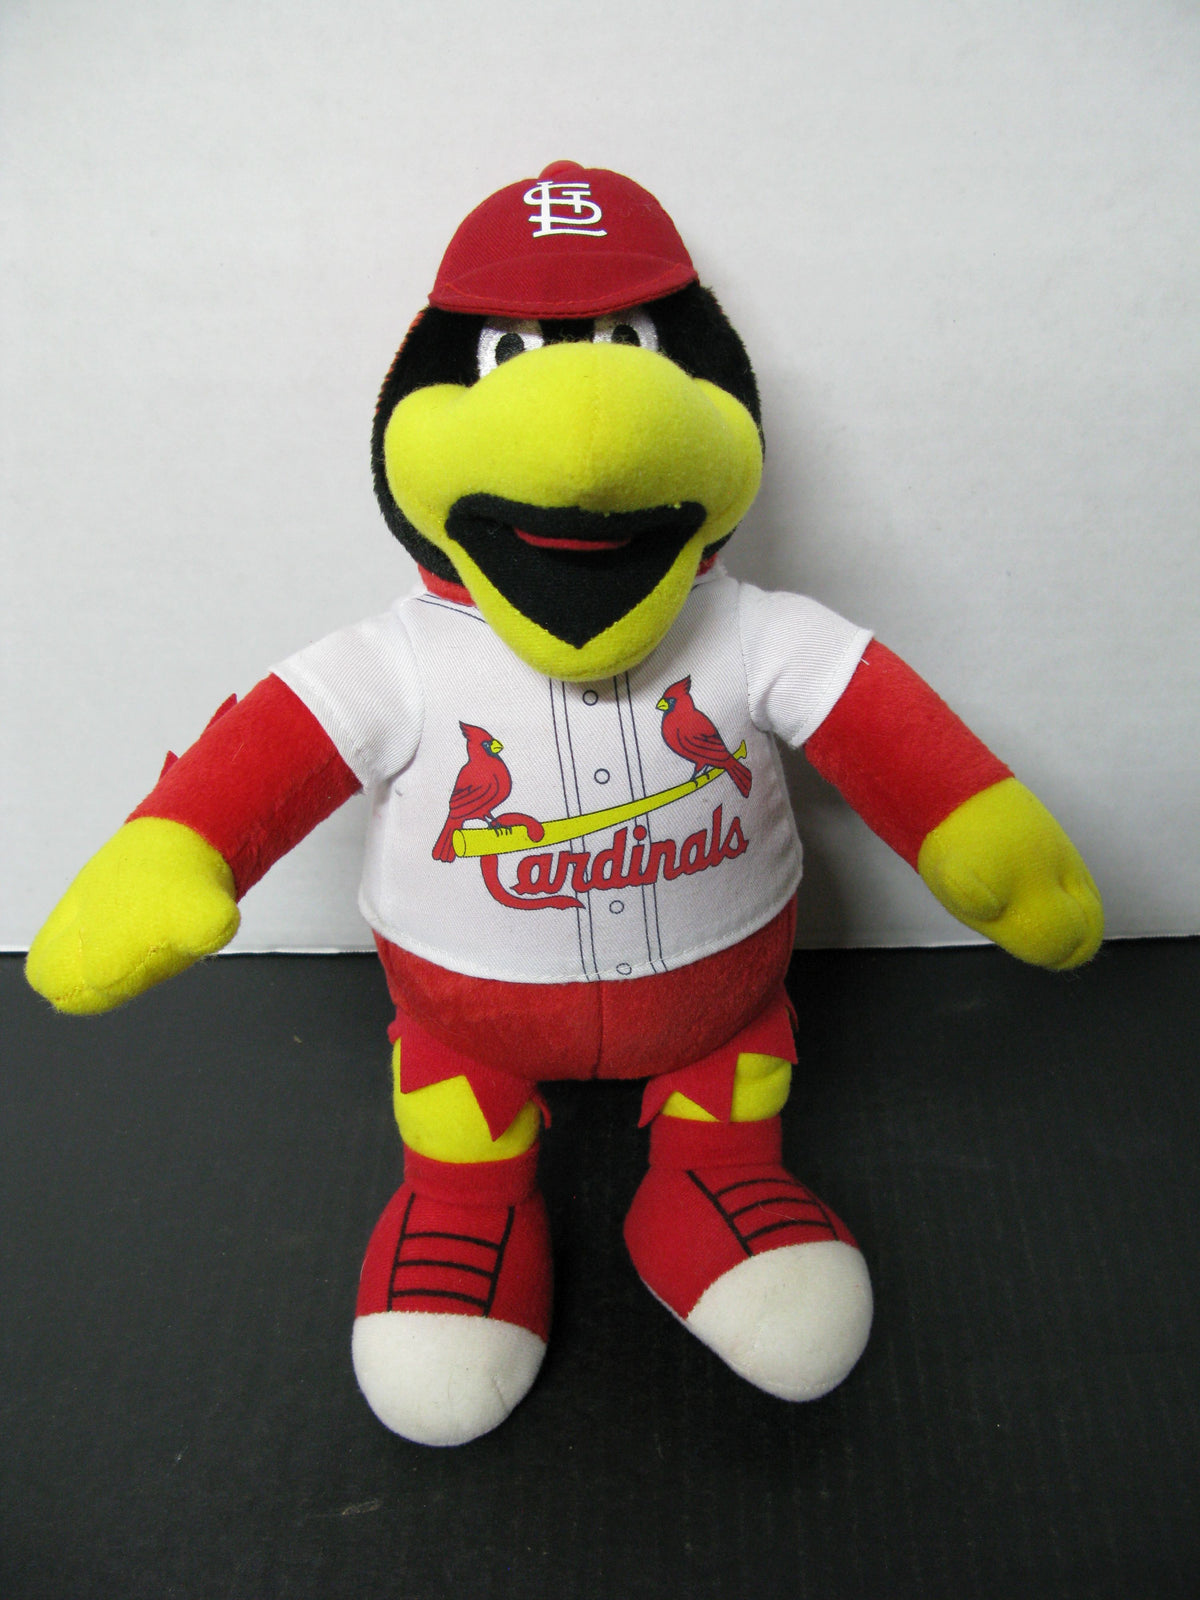 St Louis Cardinals Mascot Fredbird – The Emblem Source